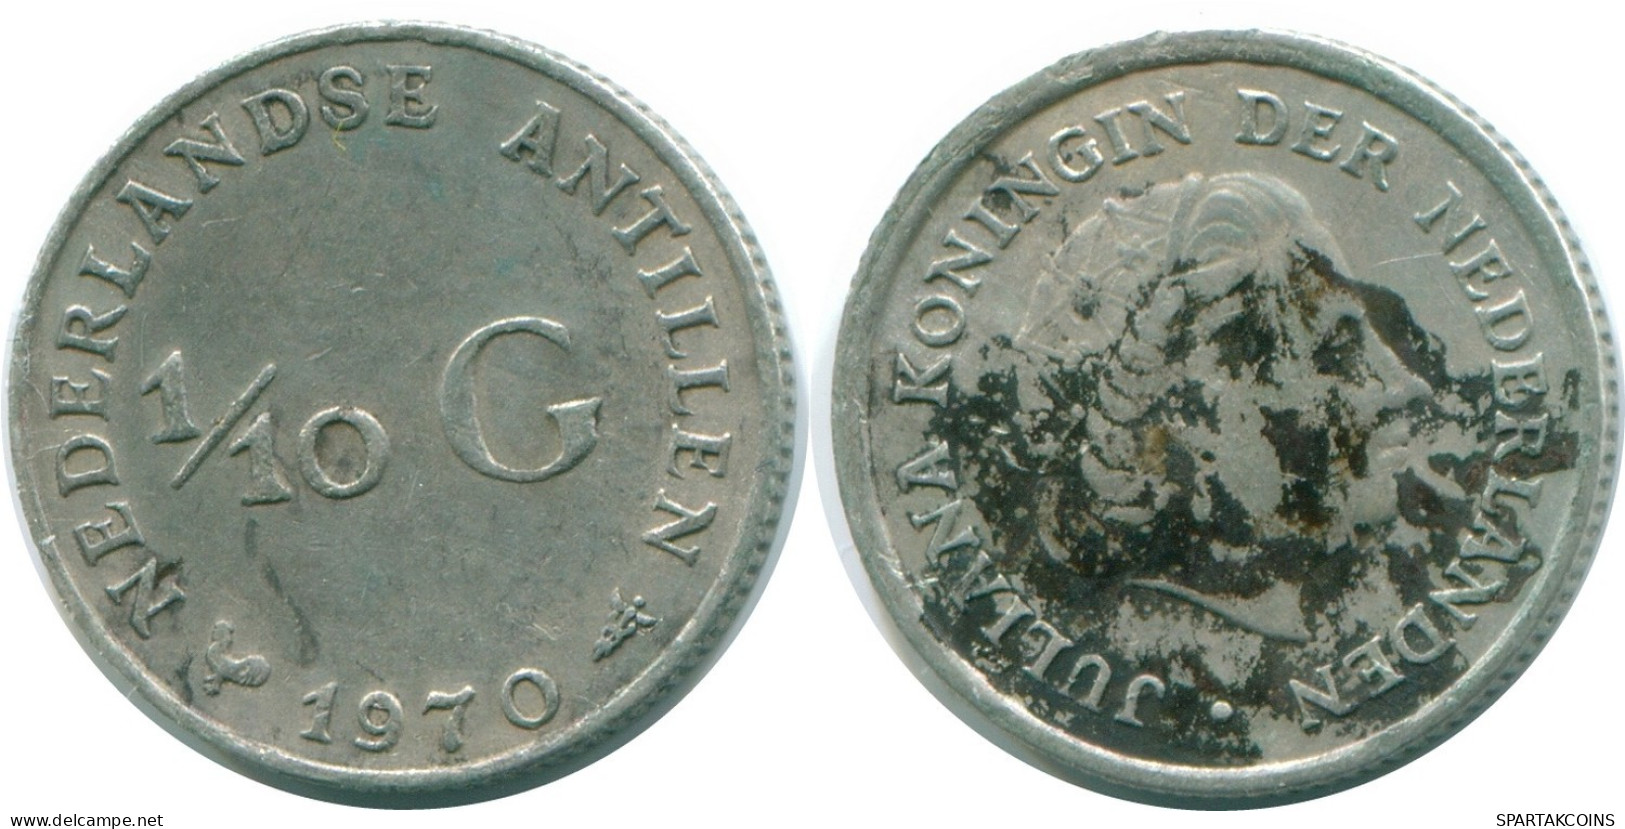 1/10 GULDEN 1970 NIEDERLÄNDISCHE ANTILLEN SILBER Koloniale Münze #NL13040.3.D.A - Niederländische Antillen